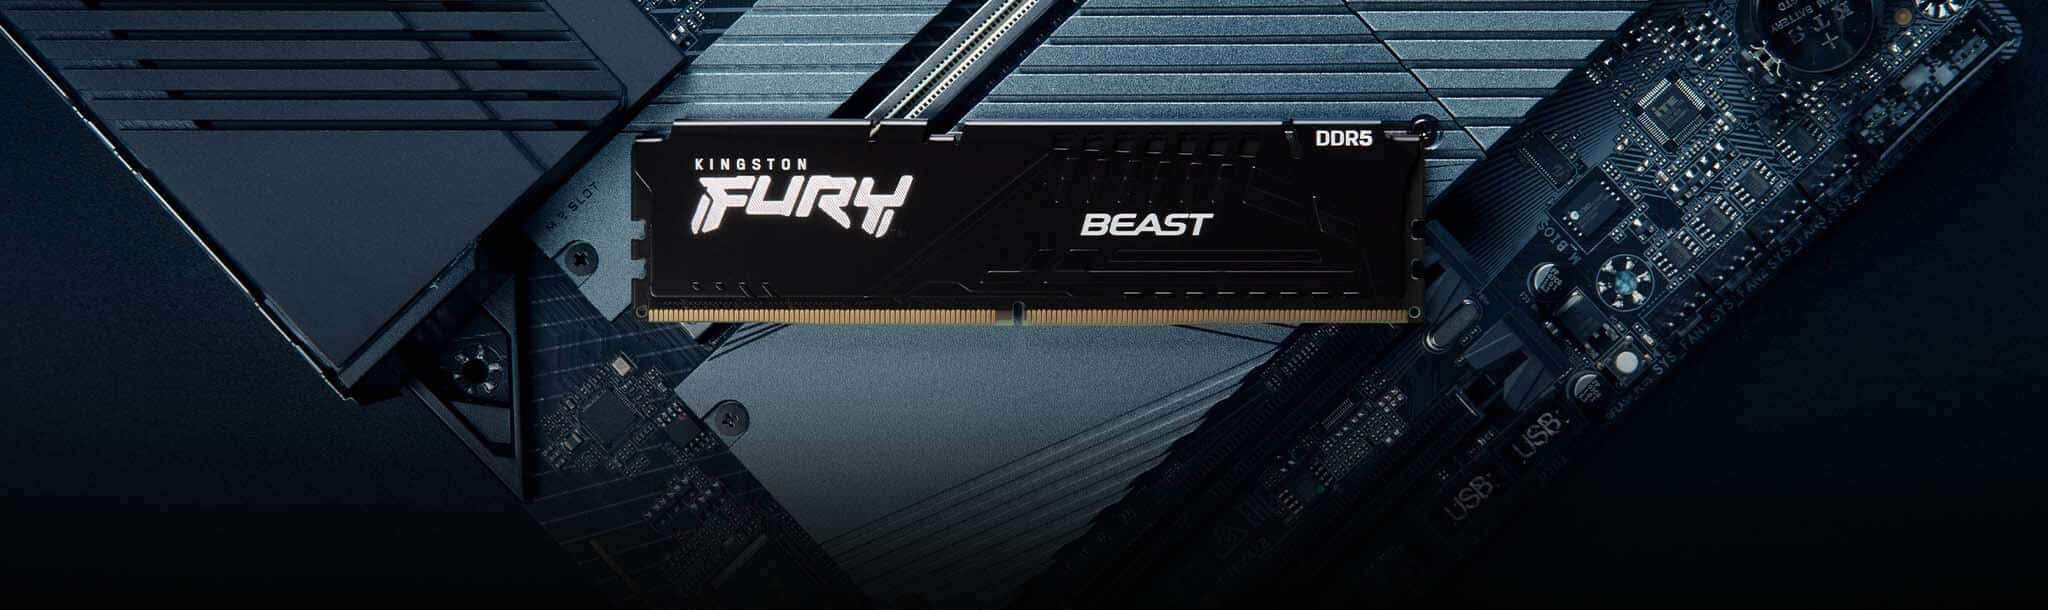 Kingston Fury Beast 16GB